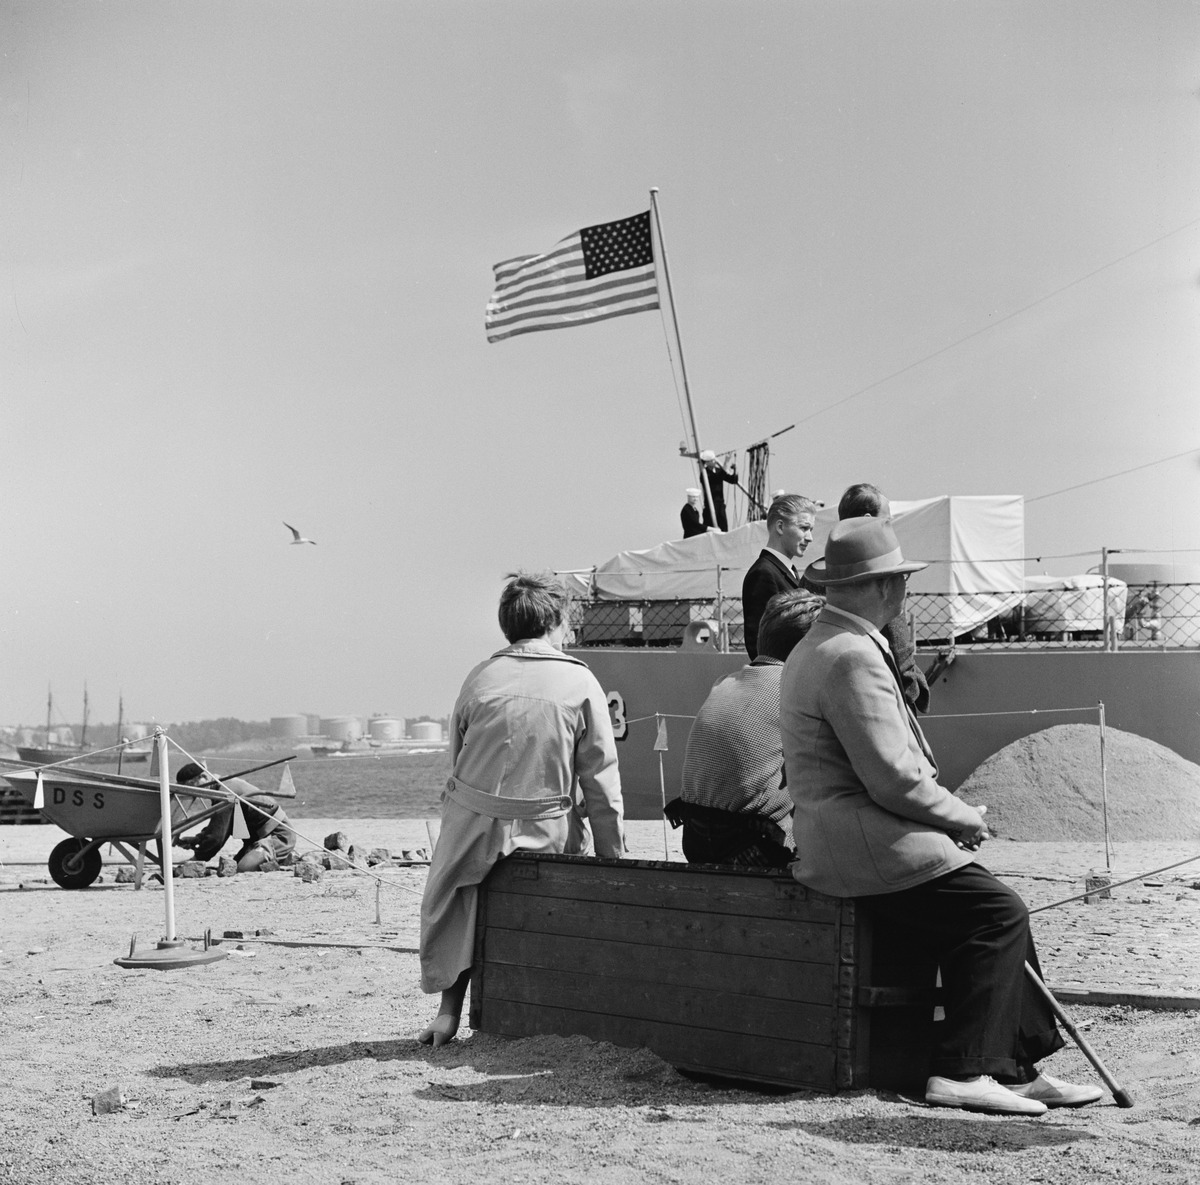 Ihmiset katselevat sota-alusta Eteläsatamassa, Katajanokanlaiturissa katajanokan kärjessä